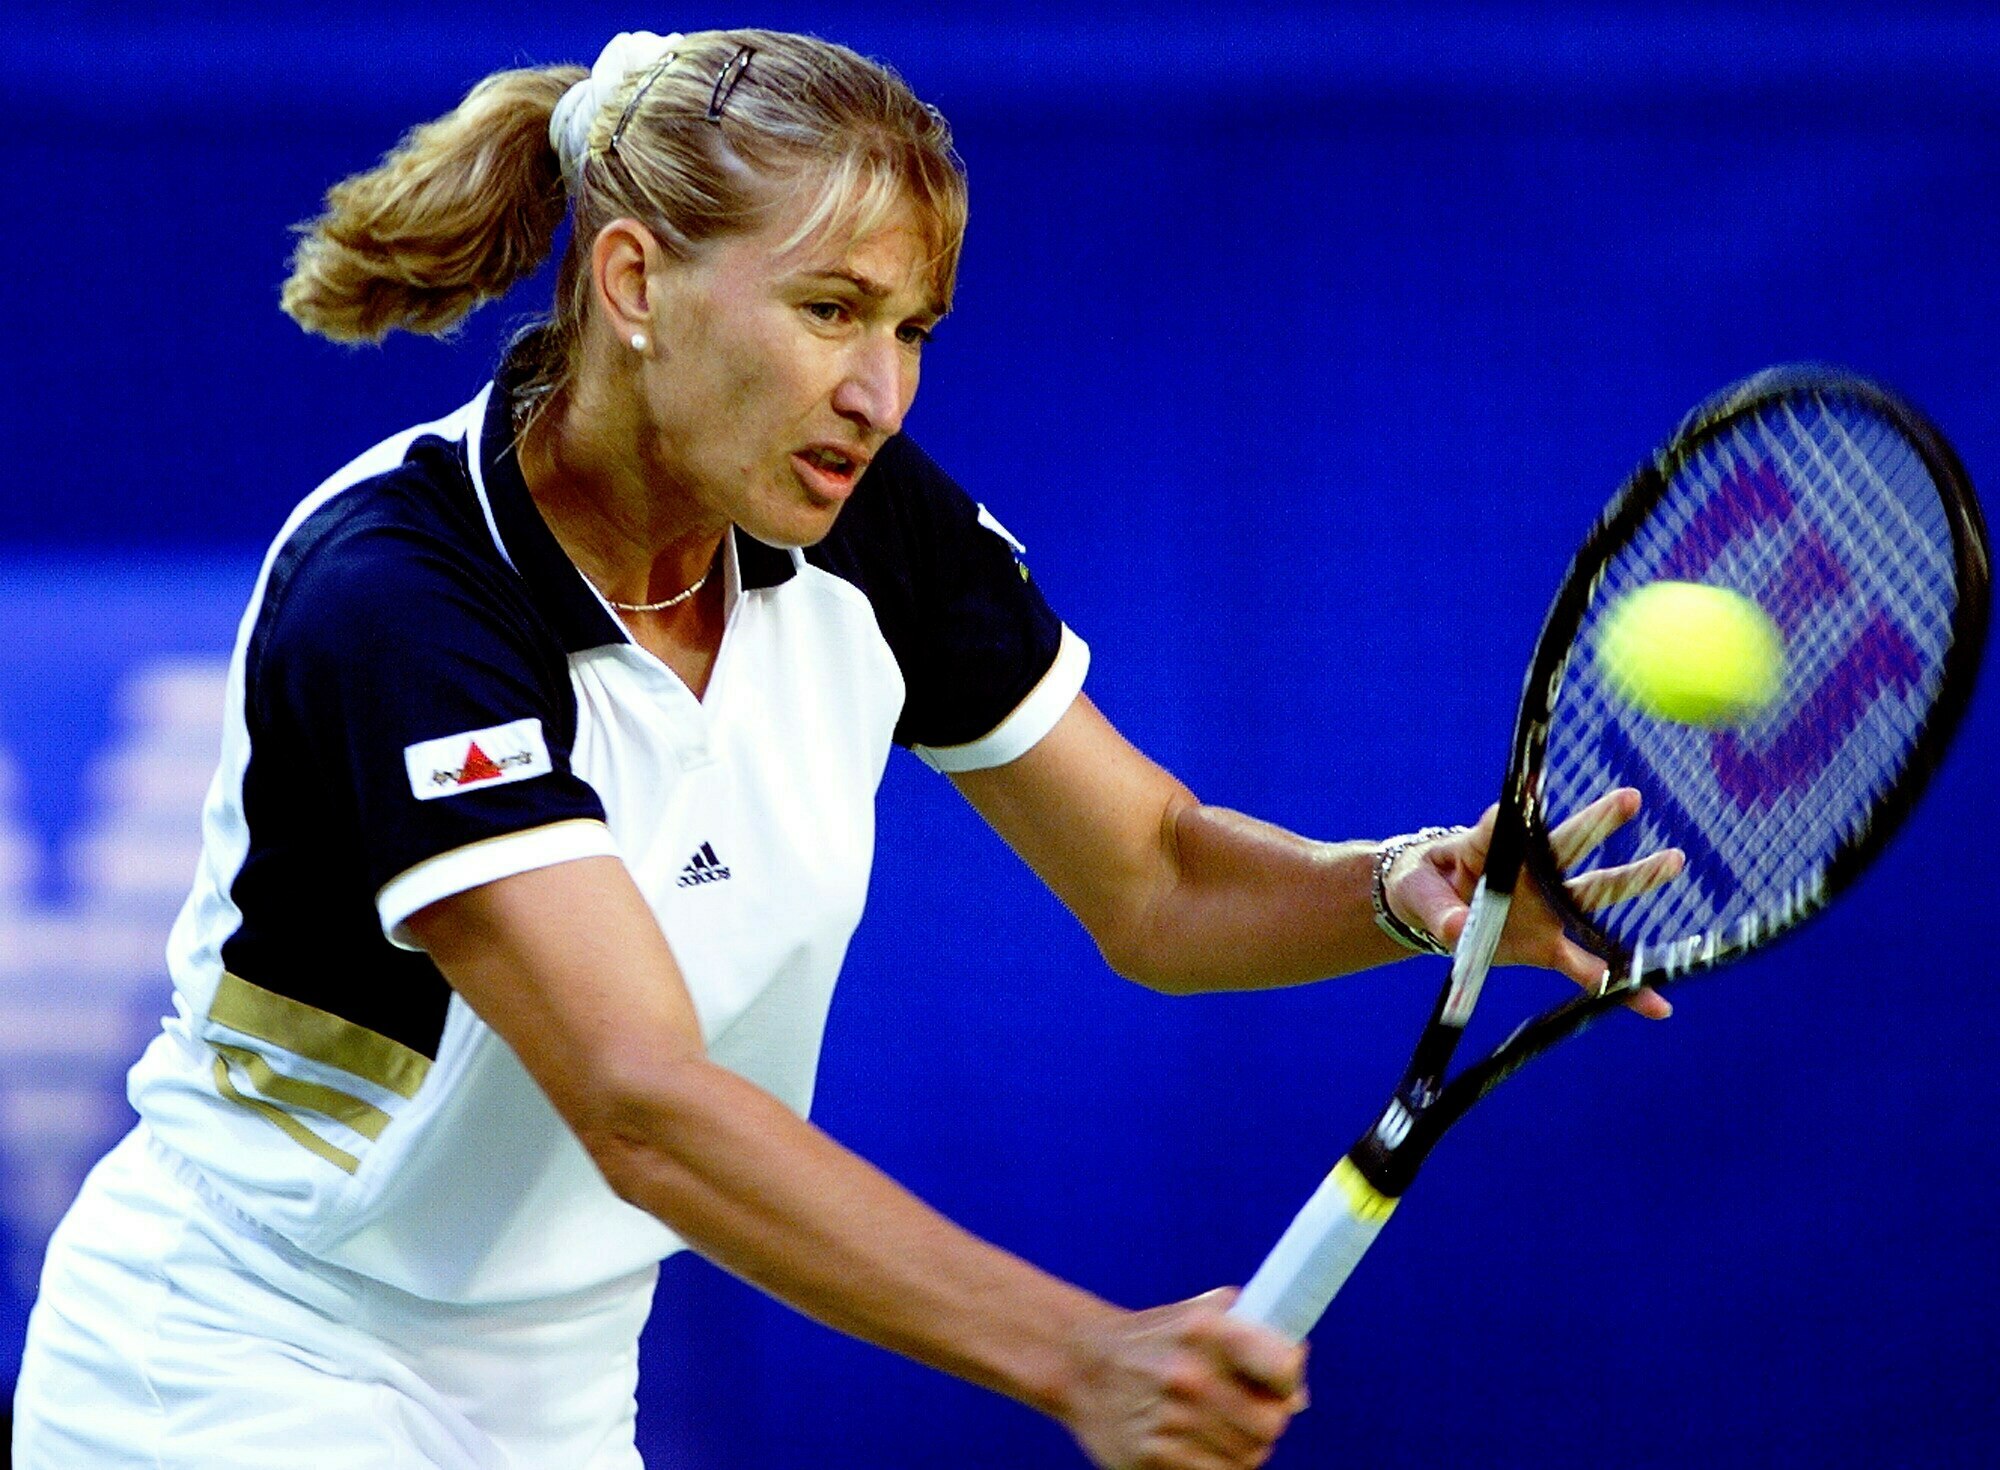 Steffi Graf is a tennis legend who hung up her racquet in 1999 after winnin...